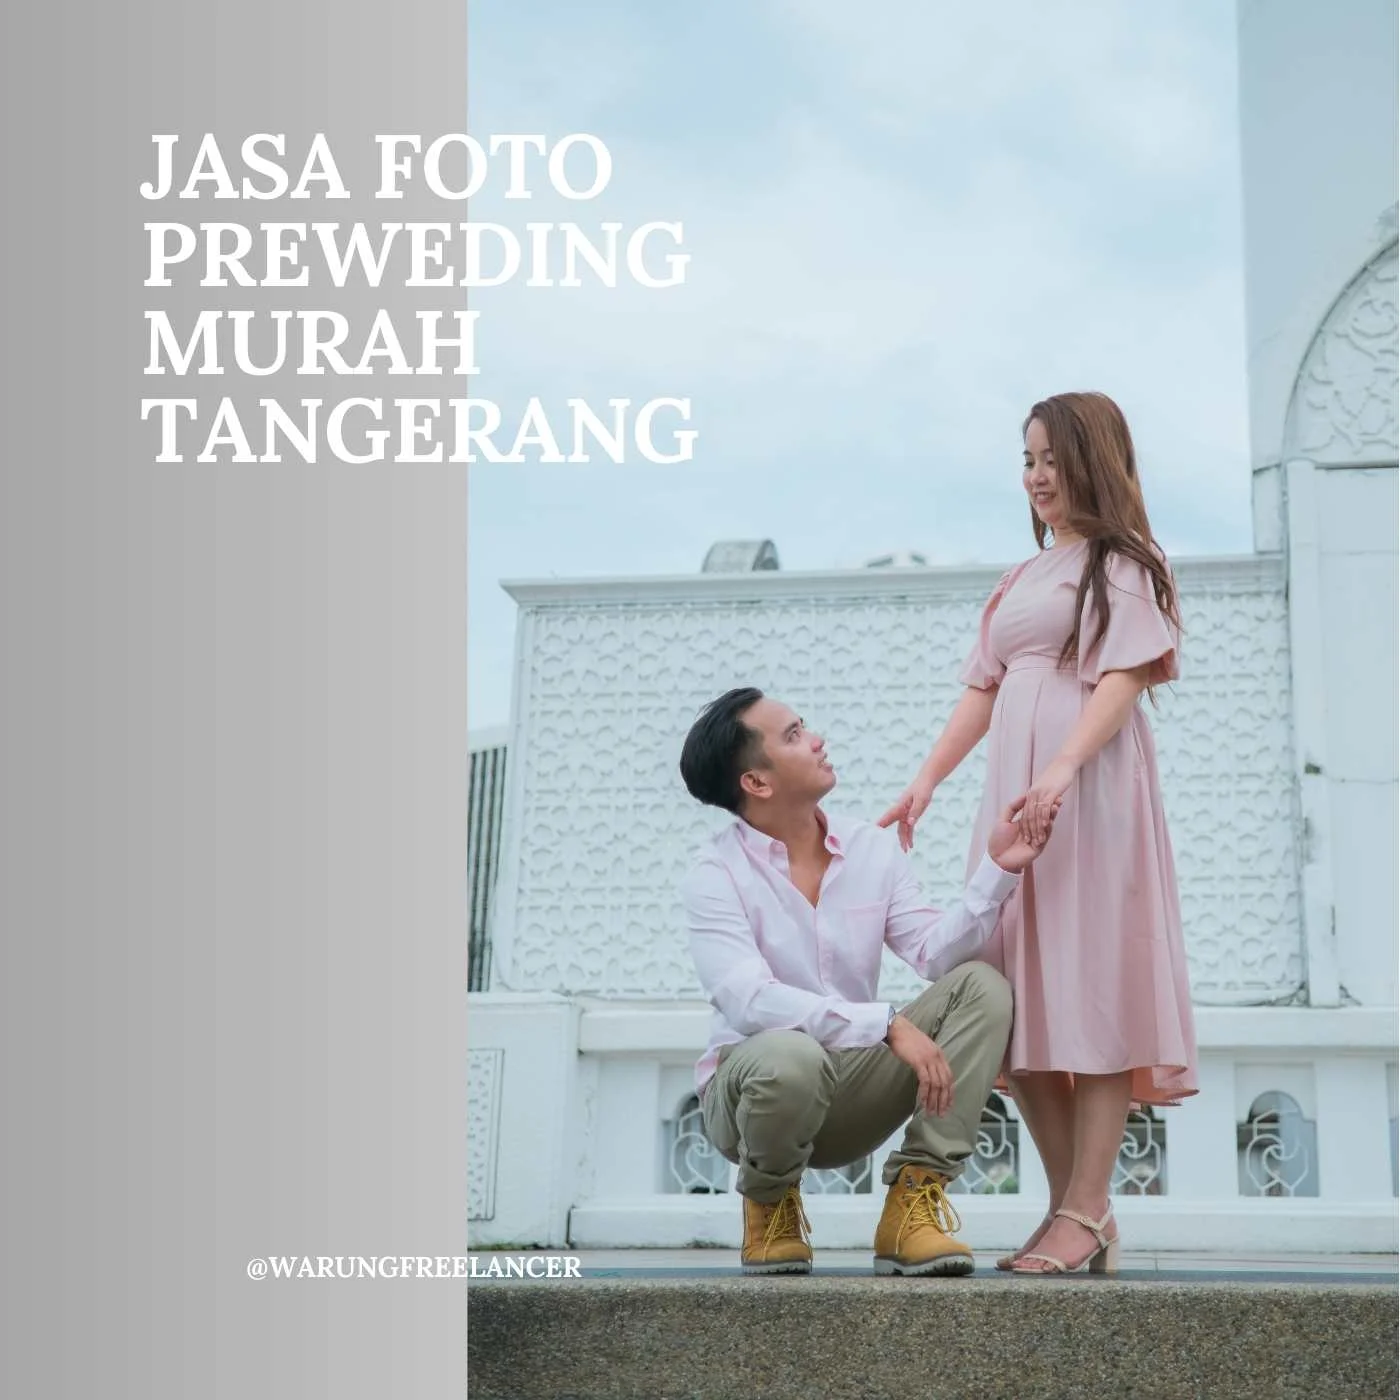 Tangerang Prewedding Photo Services